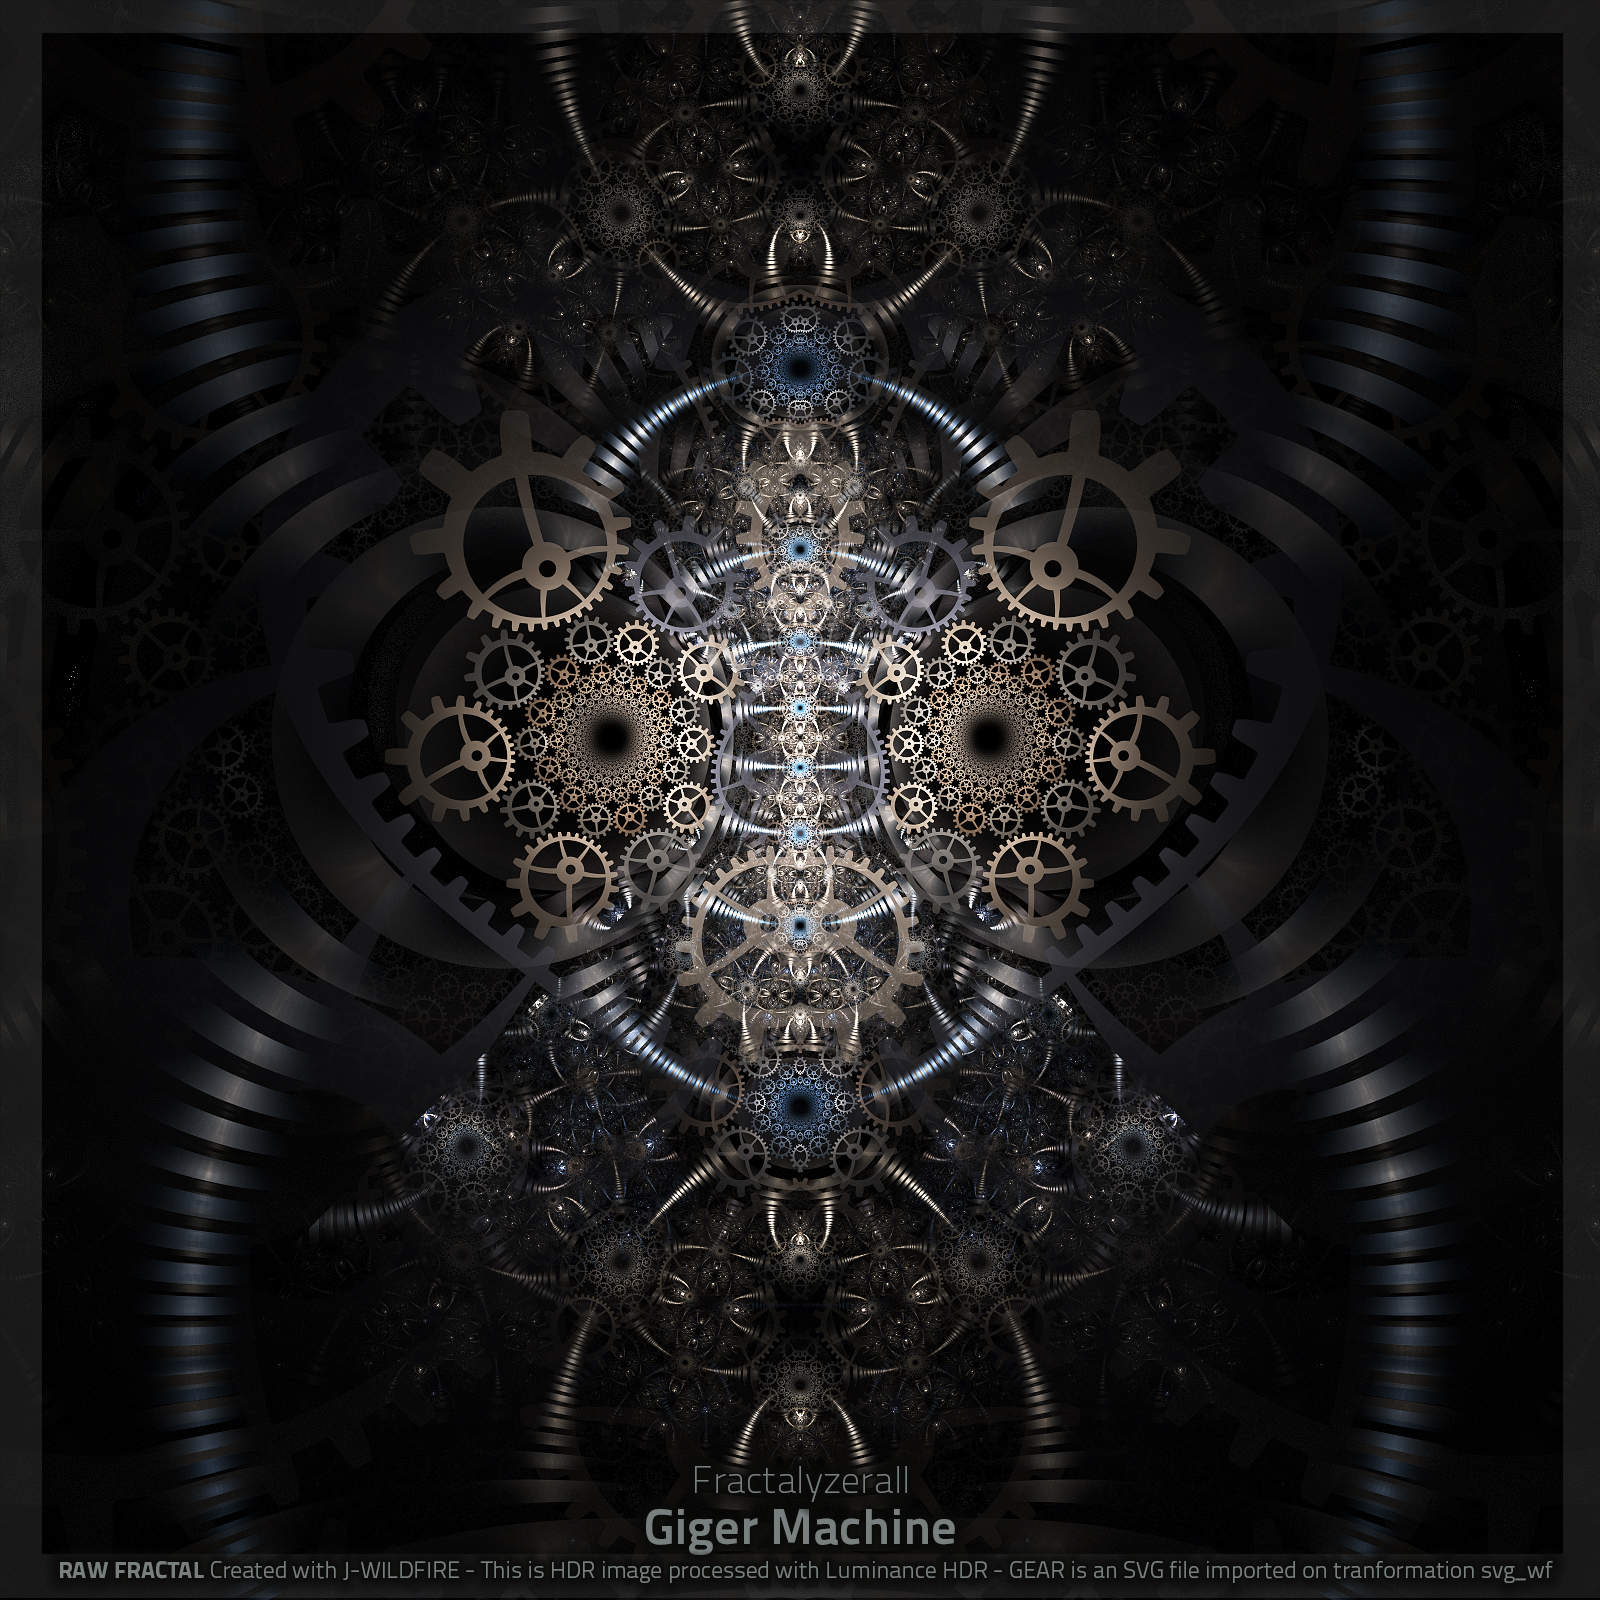 Giger Machine by fractalyzerall on DeviantArt